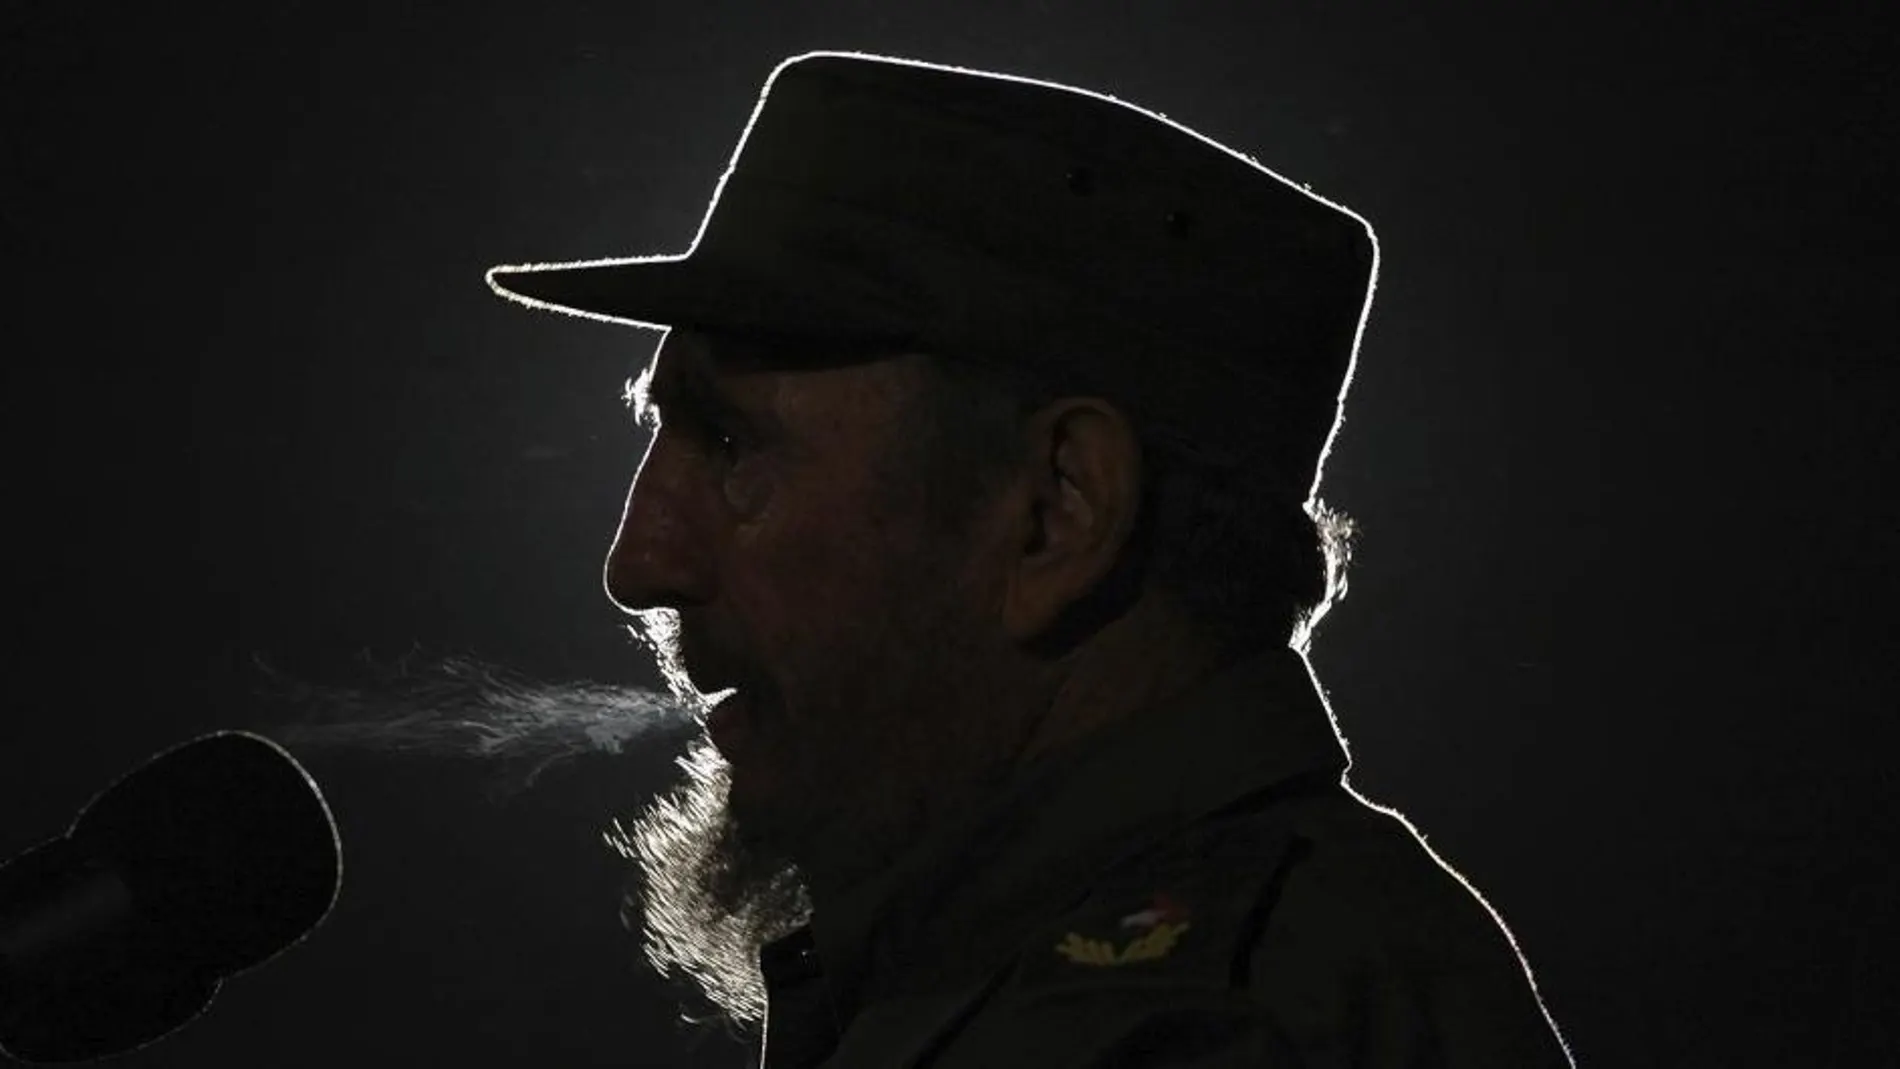 Fotografía de archivo del 04 de febrero de 2006 del líder cubano Fidel Castro